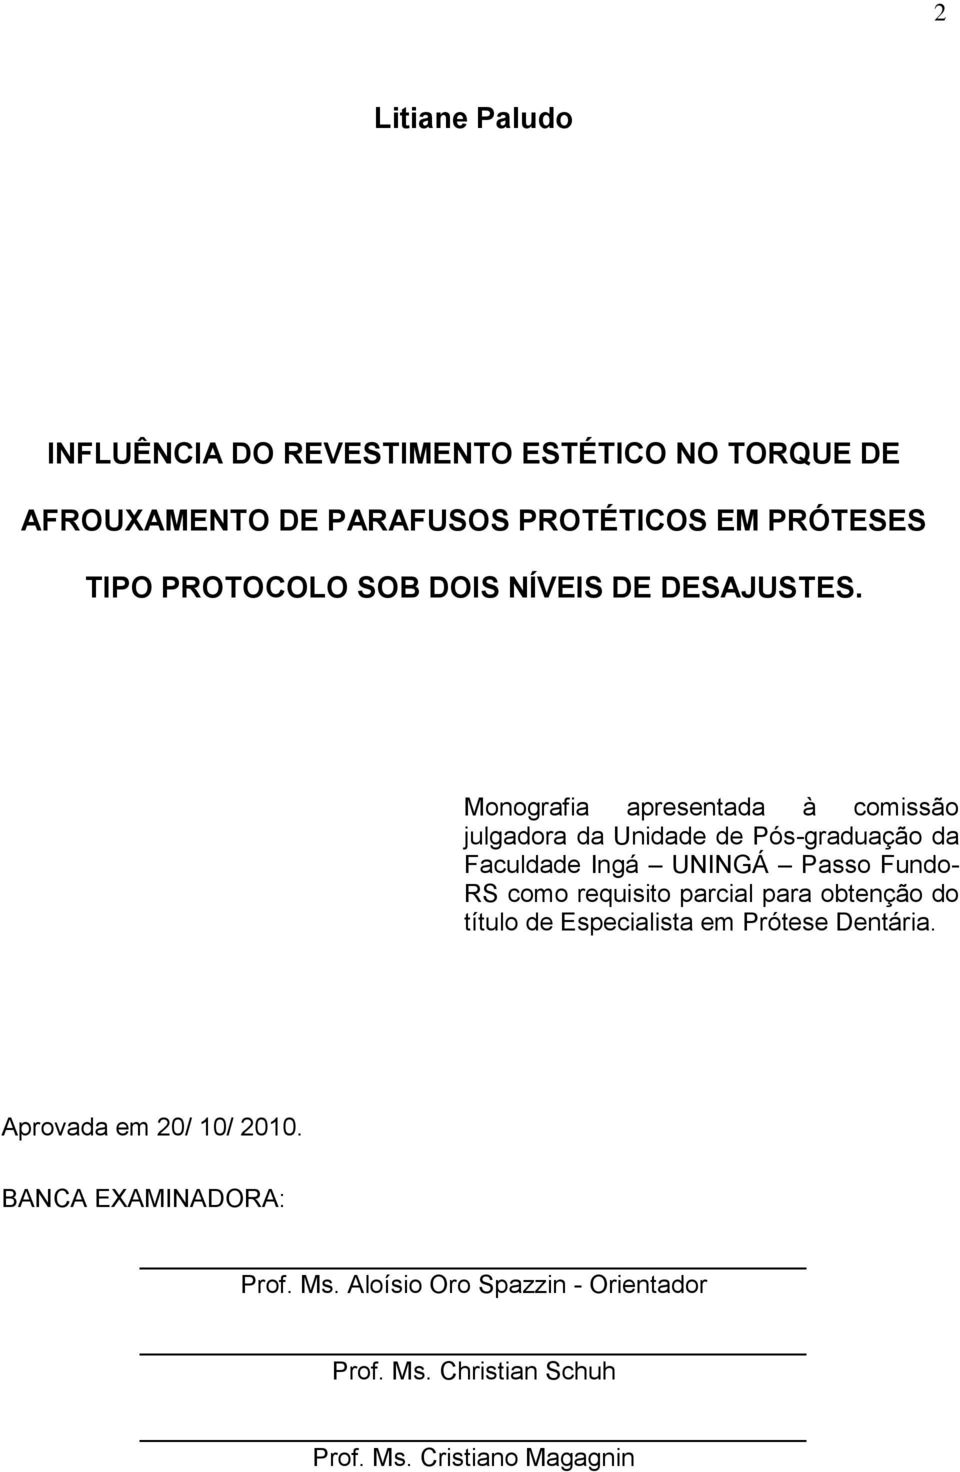 Monografia apresentada à comissão julgadora da Unidade de Pós-graduação da Faculdade Ingá UNINGÁ Passo Fundo- RS como